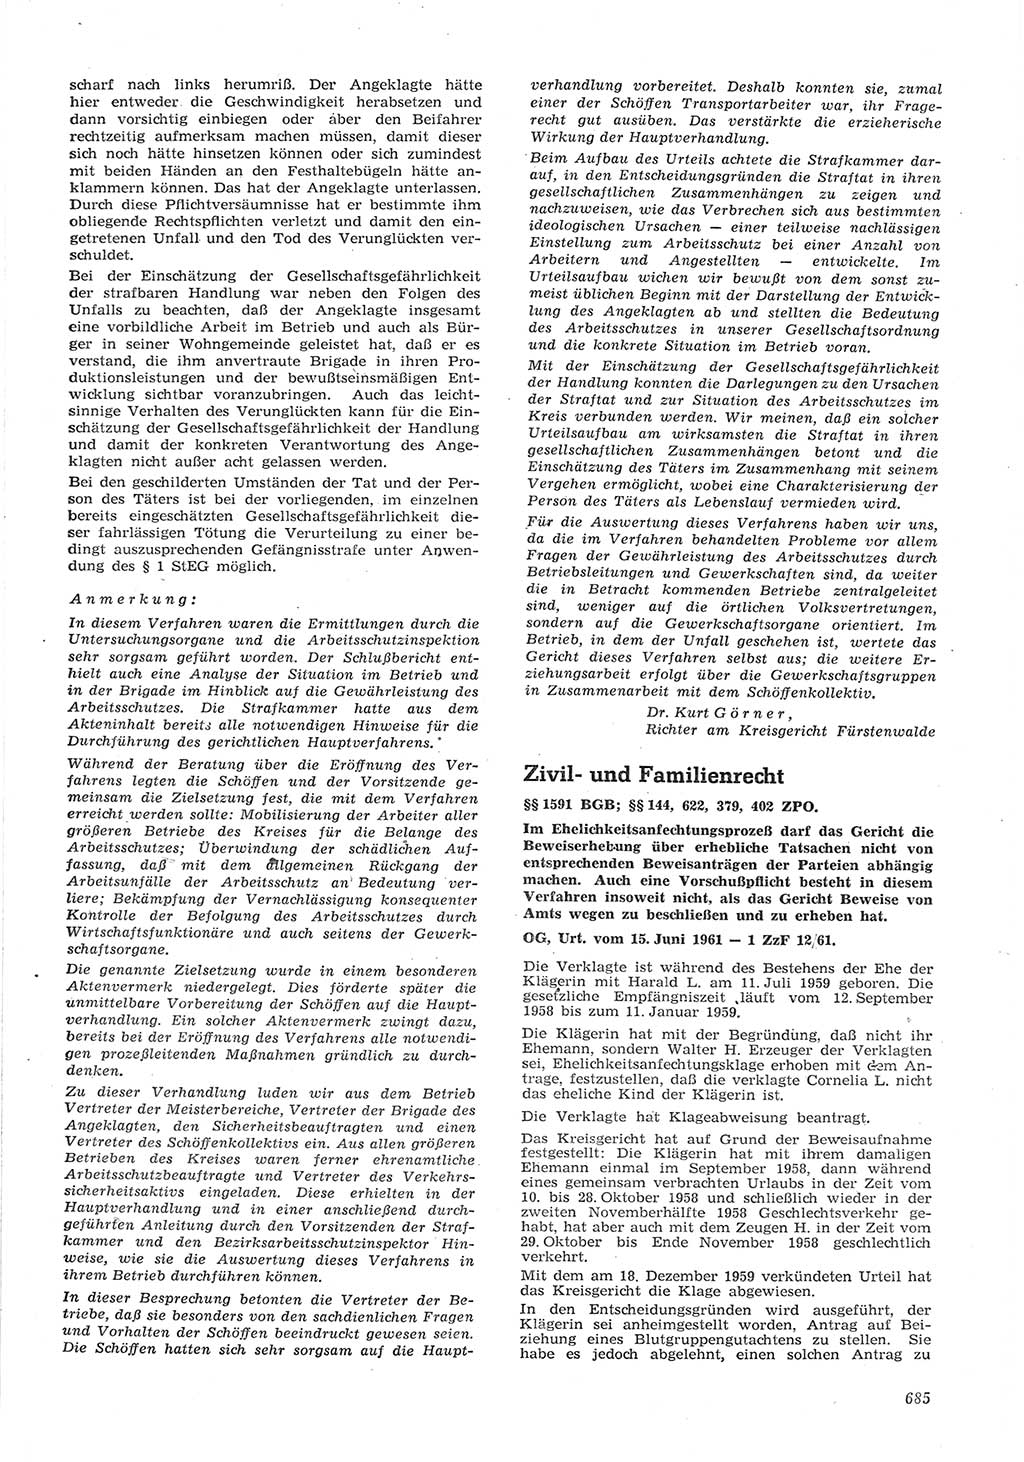 Neue Justiz (NJ), Zeitschrift für Recht und Rechtswissenschaft [Deutsche Demokratische Republik (DDR)], 15. Jahrgang 1961, Seite 685 (NJ DDR 1961, S. 685)